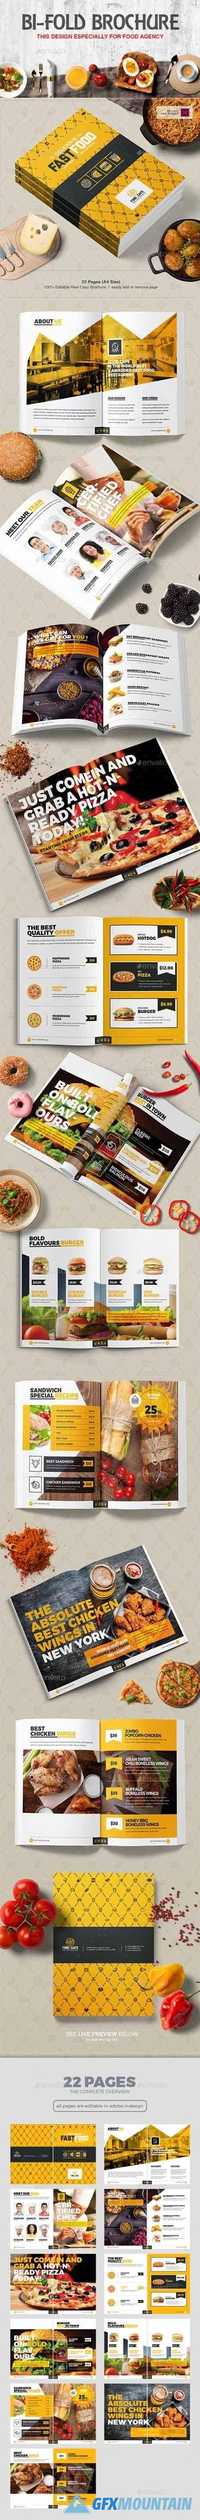 Bi-Fold Brochure Design Template for Fast Food Restaurants Cafe 20274377